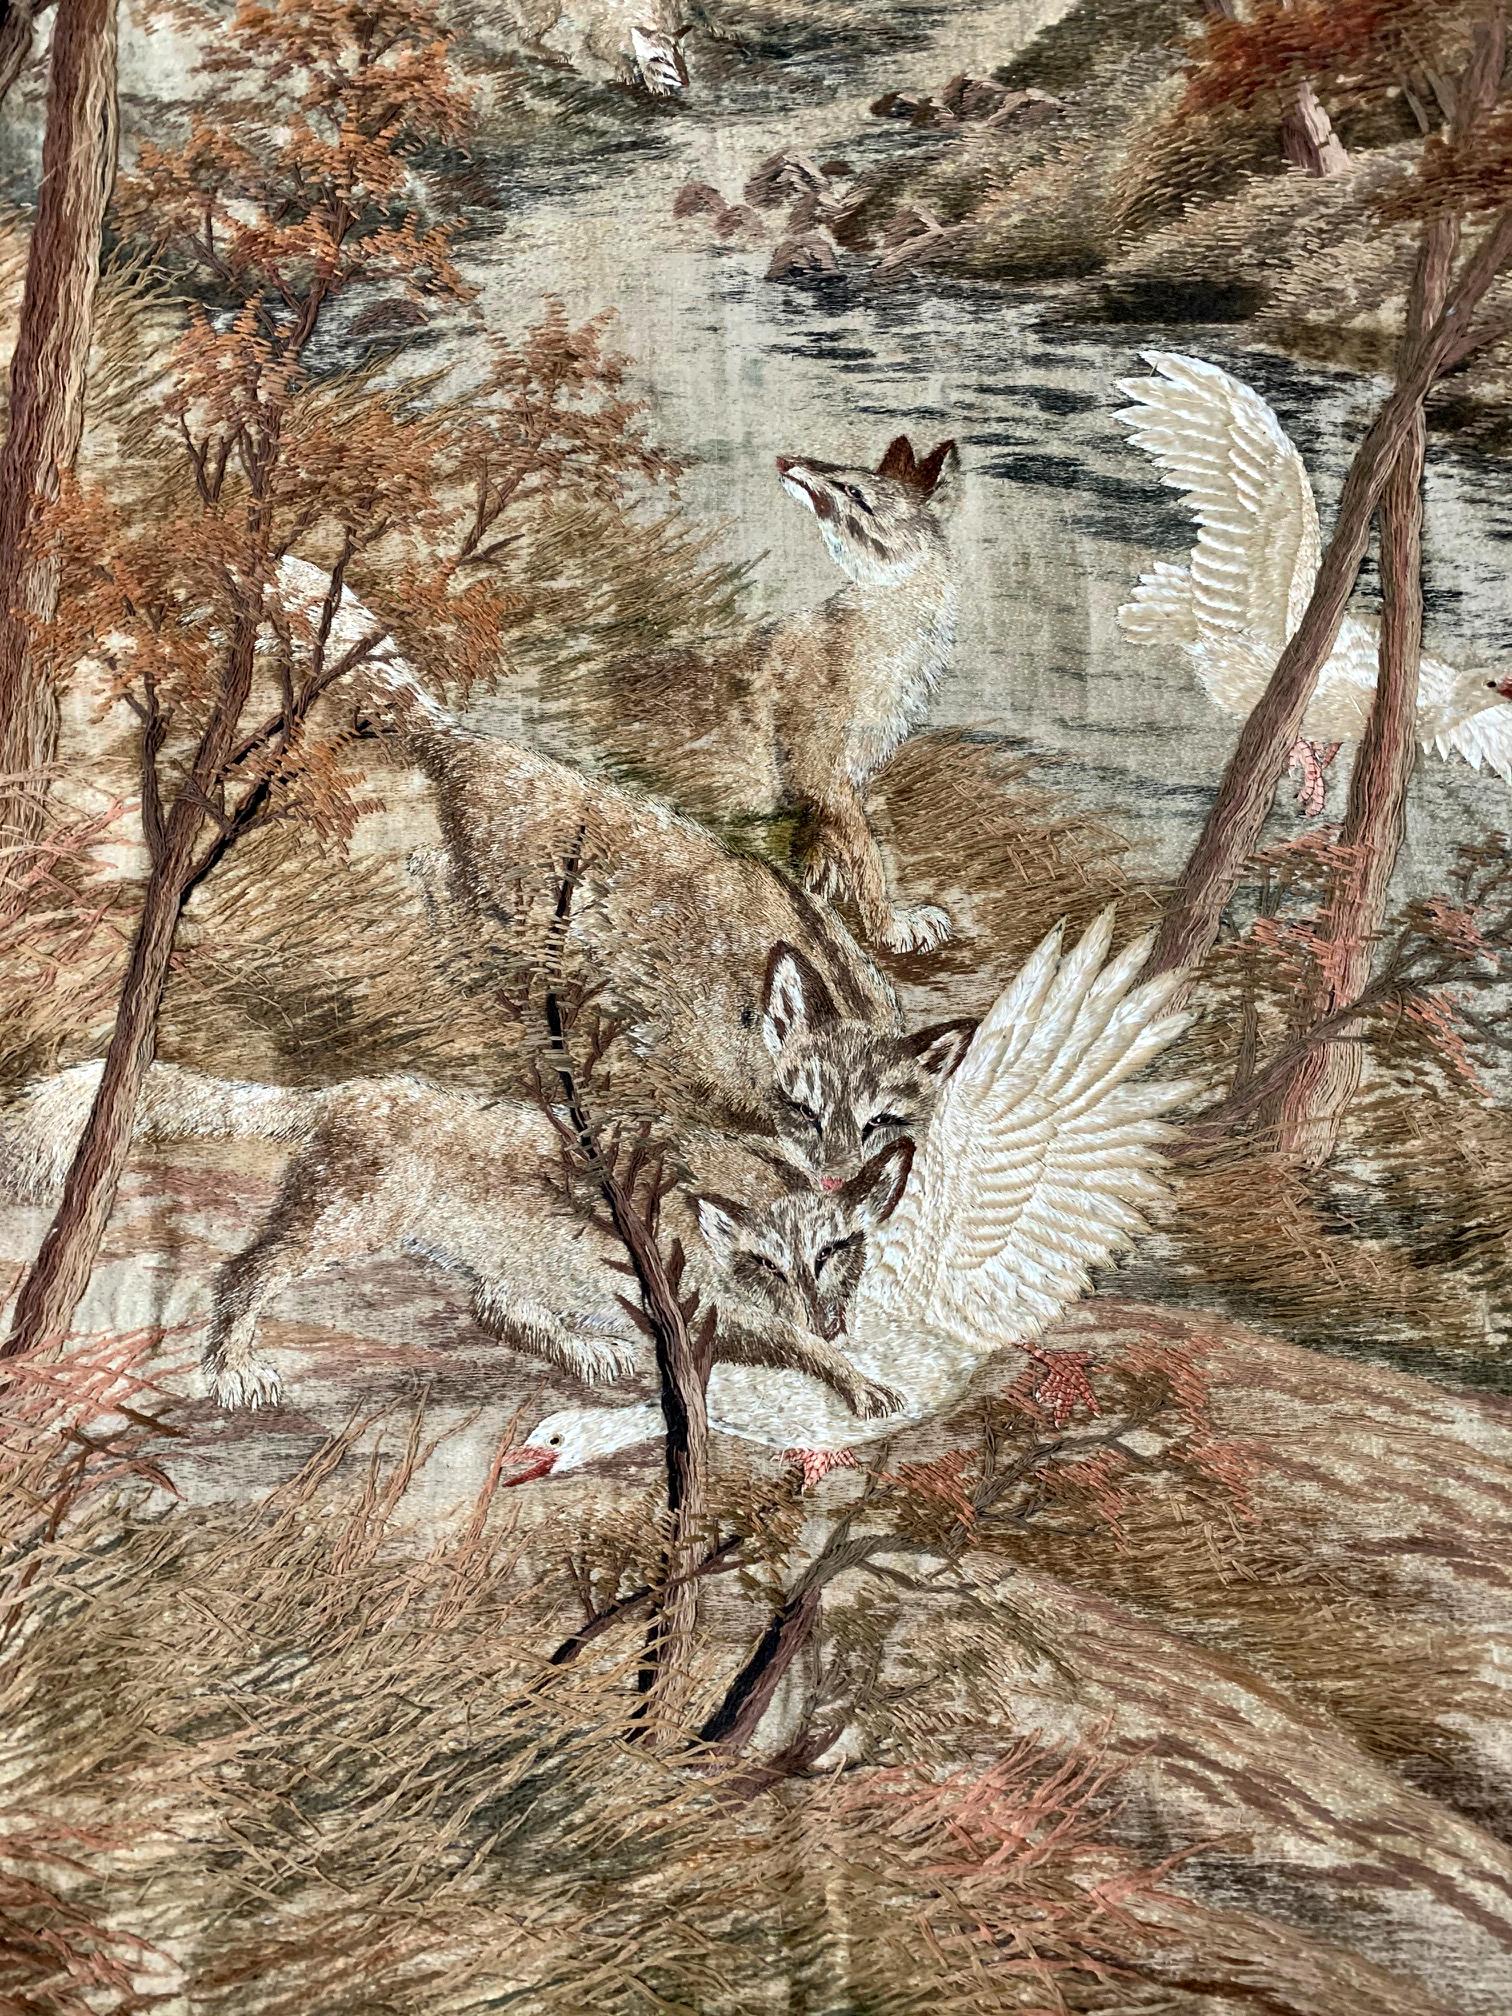 Grande tapisserie japonaise finement brodée avec bordure de brocart, vers les années 1900, période Meiji. La tapisserie représente, dans un style plutôt réaliste, un paysage forestier en automne, flanqué d'une rivière sinueuse. Dans le paysage, des